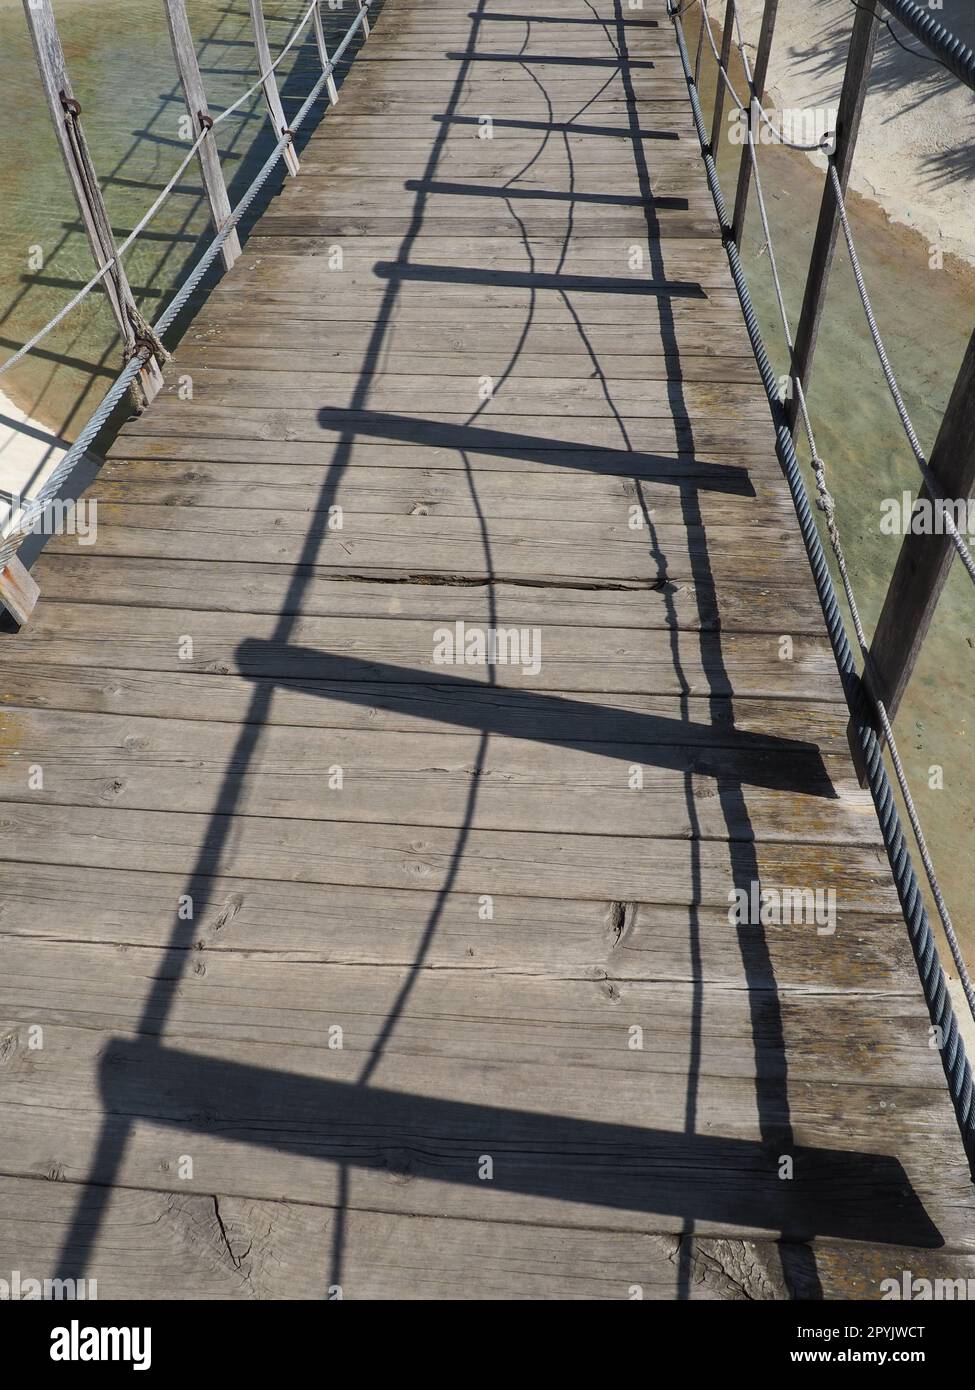 Hängende Holzbrücke. Stanisici, Bijelina, Bosnien und Herzegowina. Eine Brücke aus Brettern und Geländern, die von 4 Personen getragen werden kann. Stockfoto